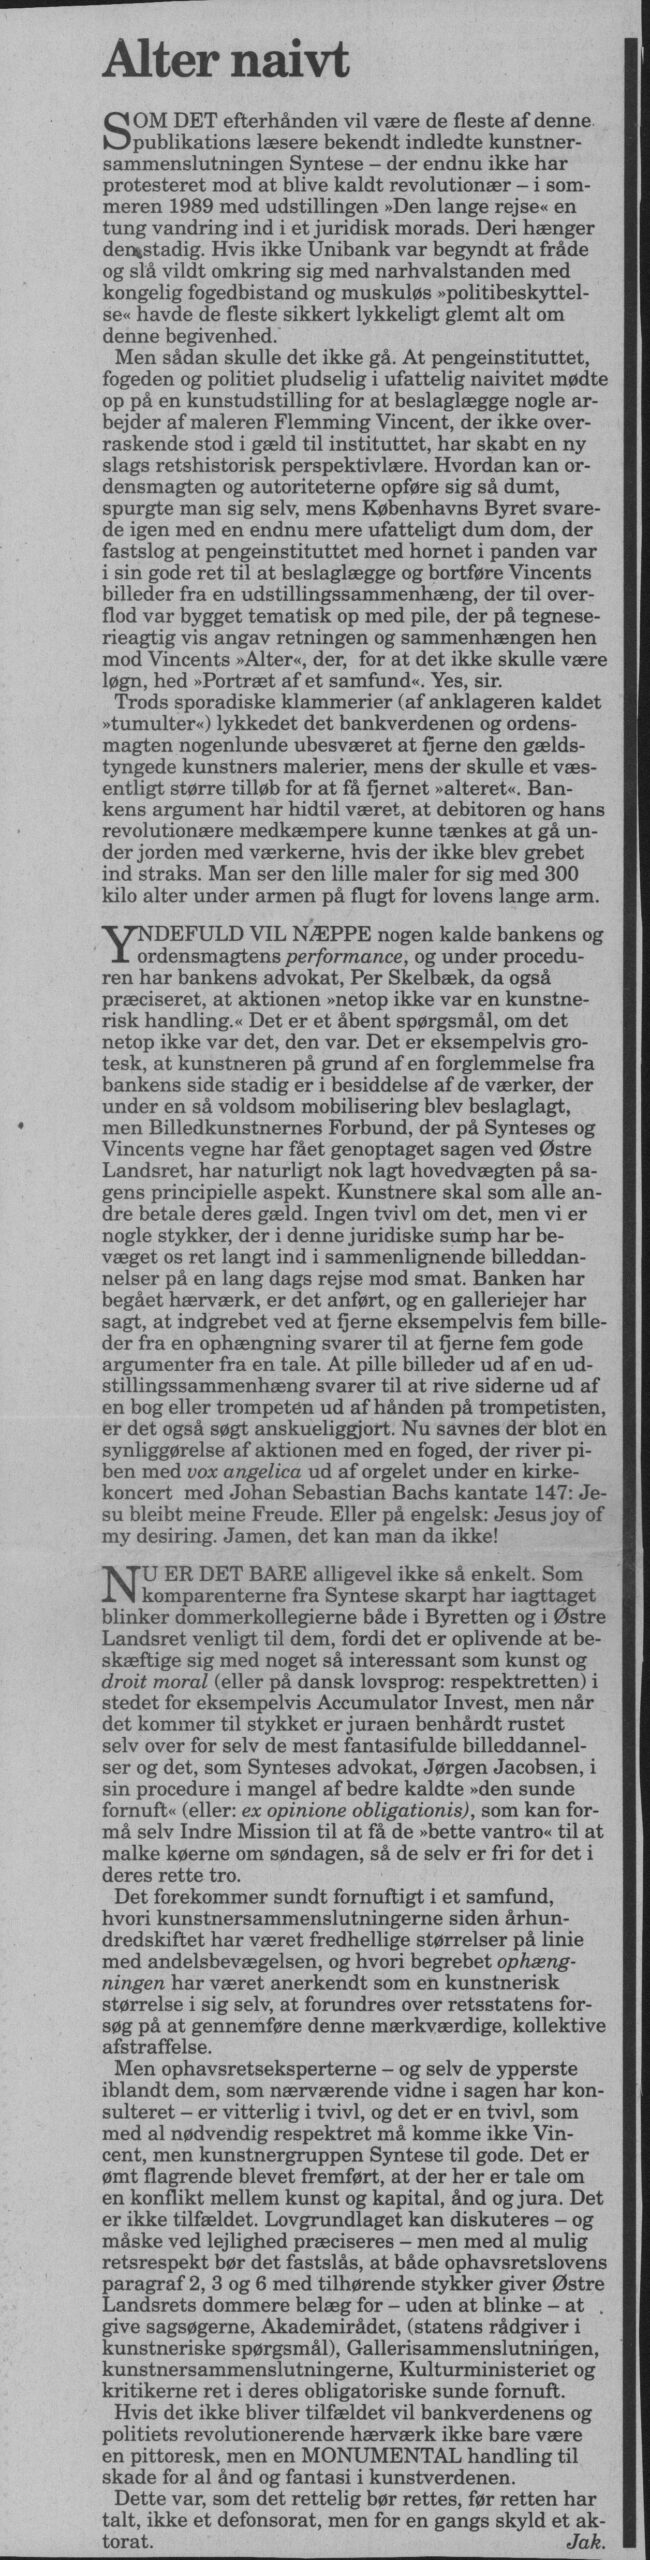 Alter naivt. Omtale (Retssag. Den lange rejse, Charlottenborg, København 1989). Jak. Information.